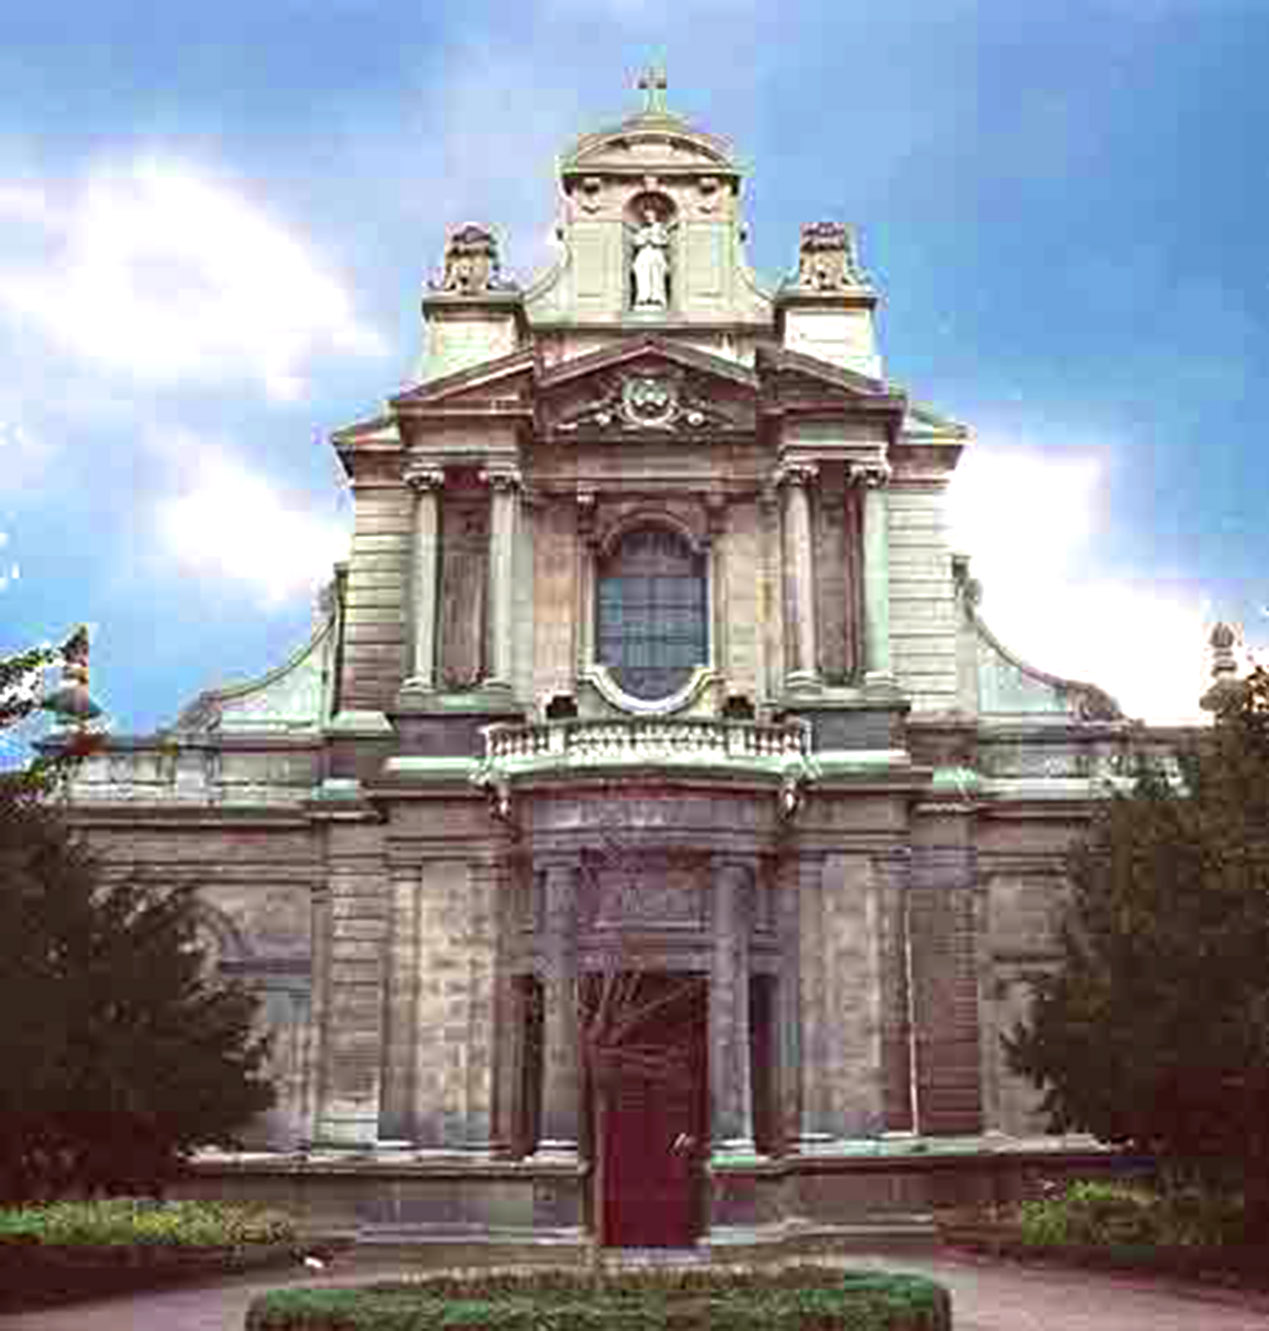 St Bruno, the facade